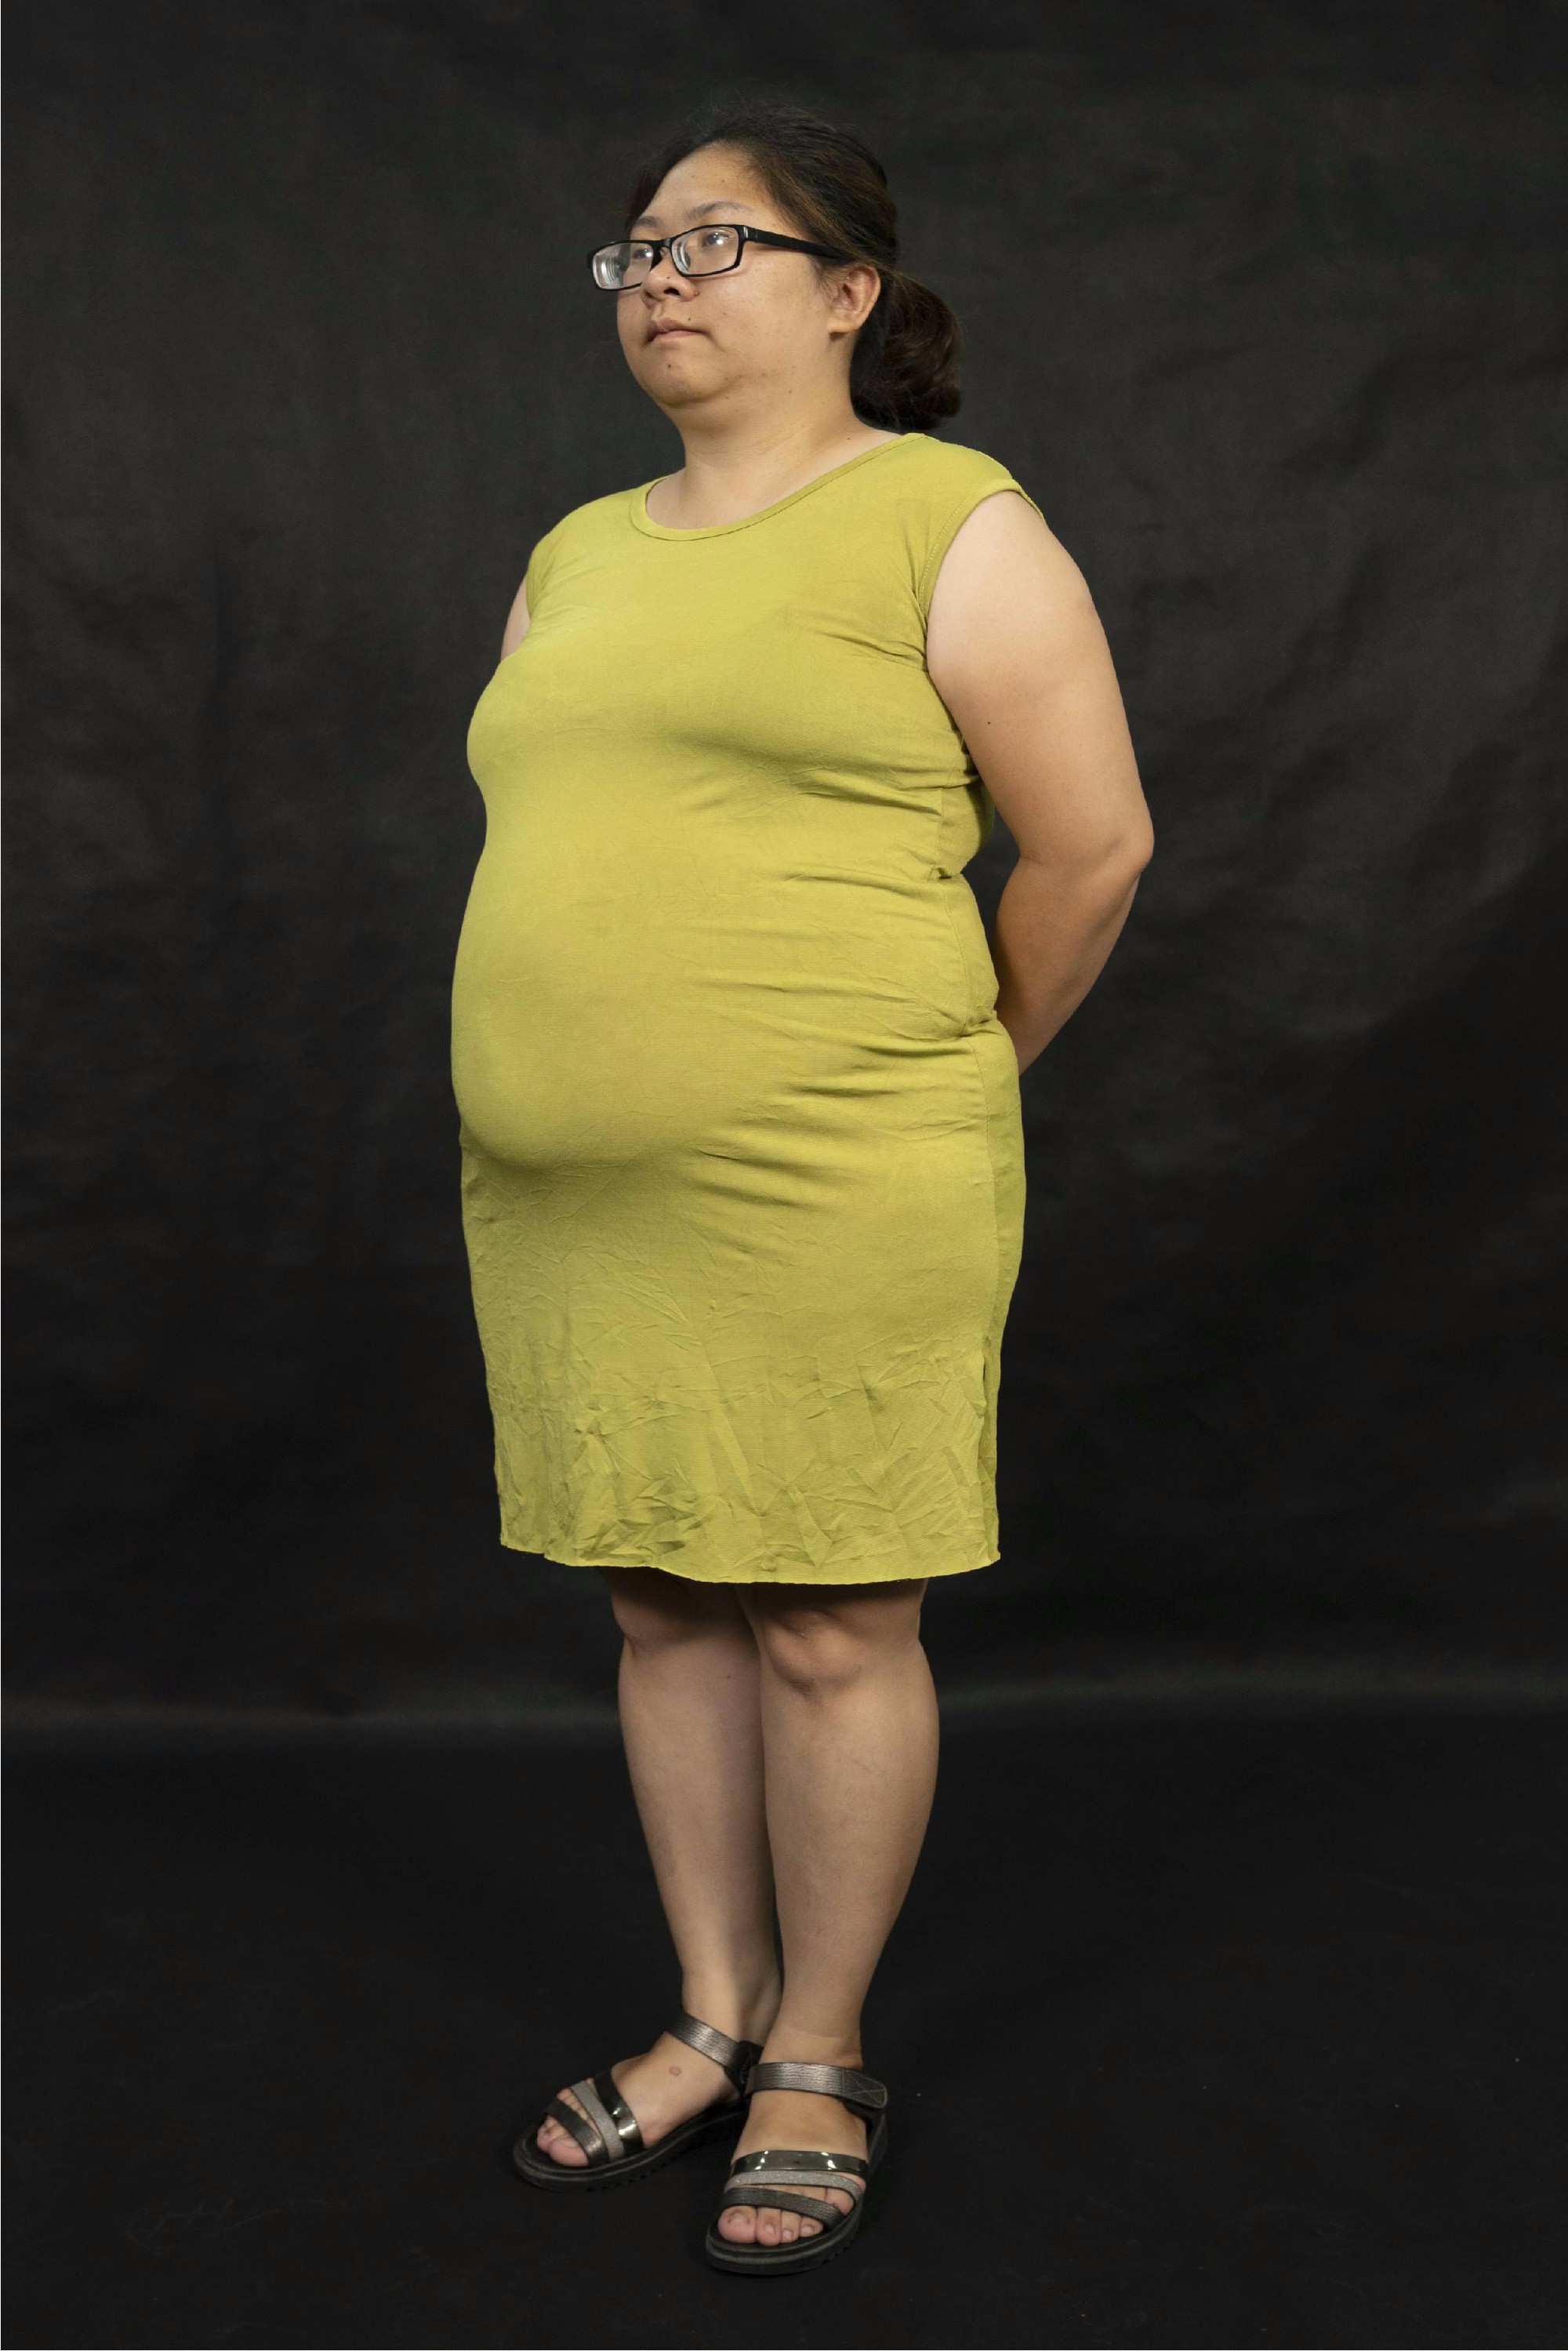 Sau 2 tháng giảm 20 kg, mẹ đơn thân lột xác từ “vịt cực xấu” hóa “thiên nga xinh đẹp” - Ảnh 2.